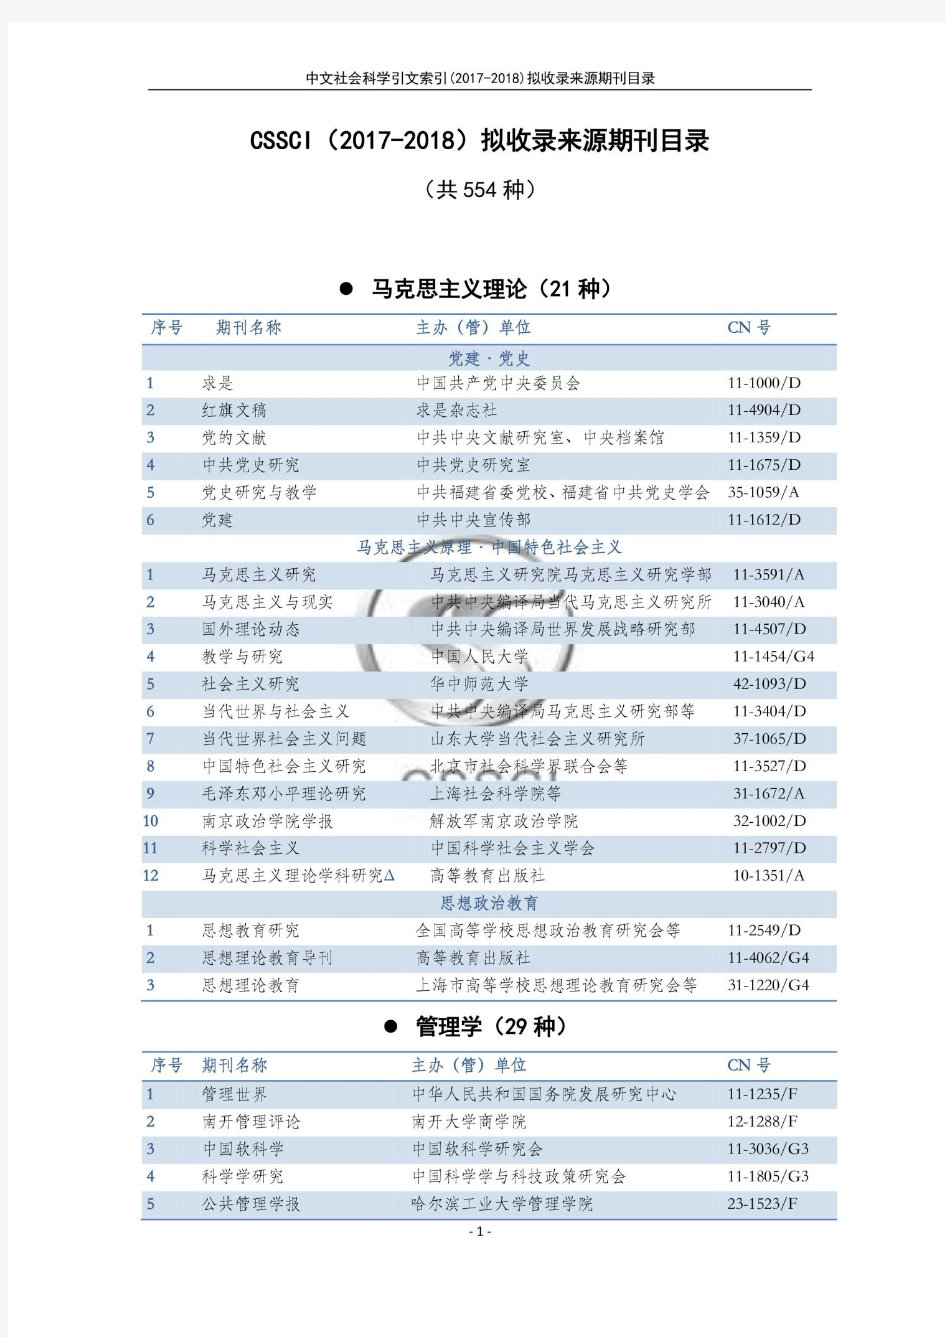 南大中国社会科学研究评价中心官网发布《中文社会科学引文索引(CSSCI)来源期刊(2017-2018)目录》公示